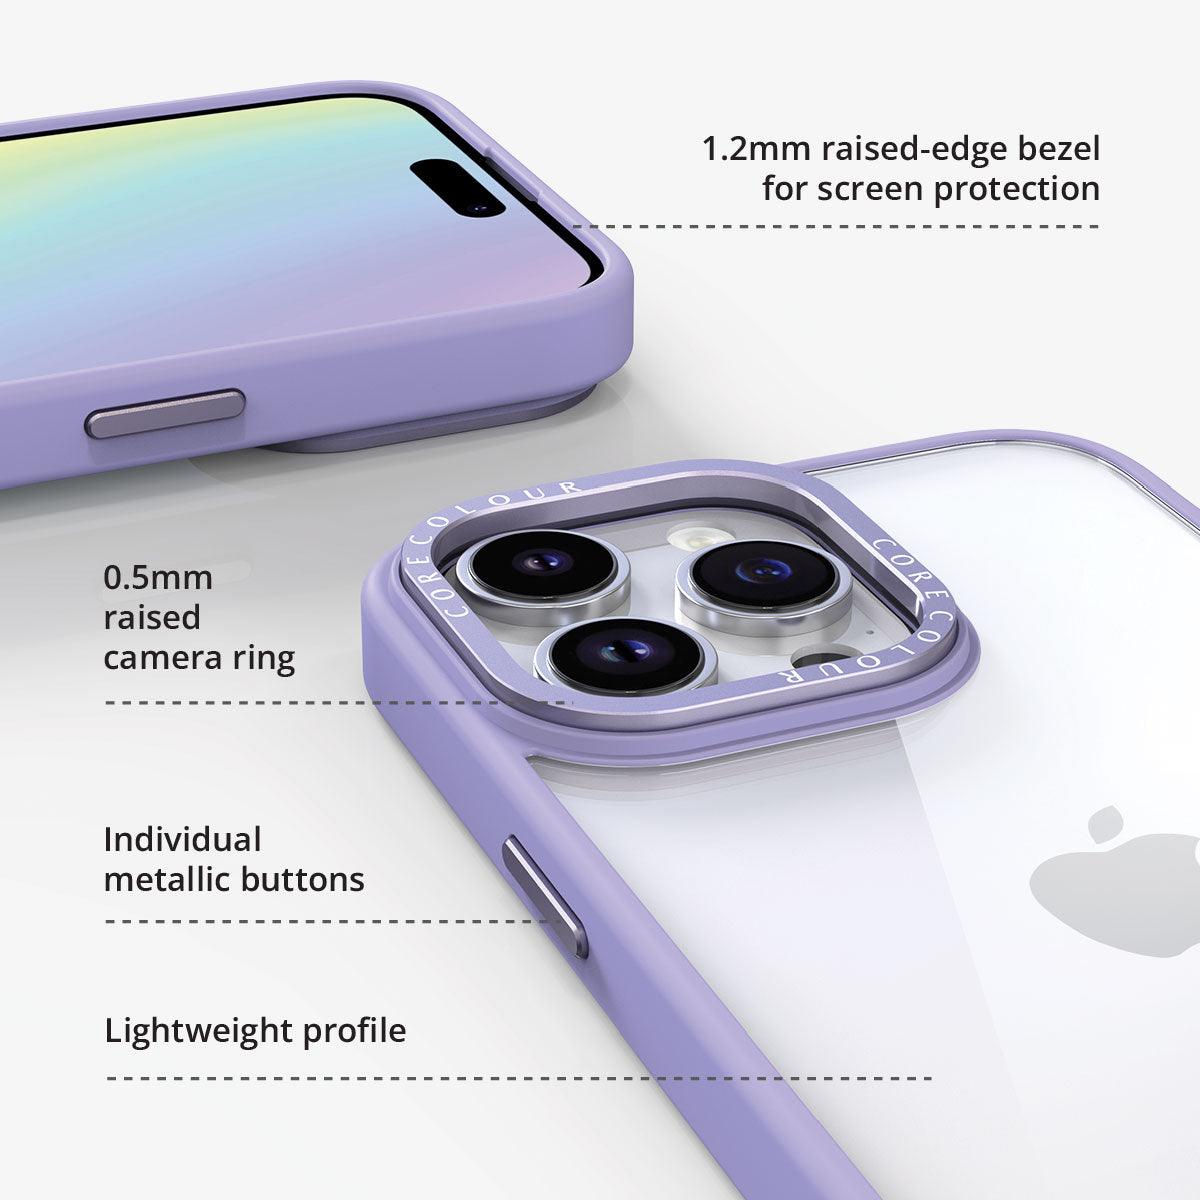 iPhone 12 Pro Hint of Mint Clear Phone Case - CORECOLOUR AU